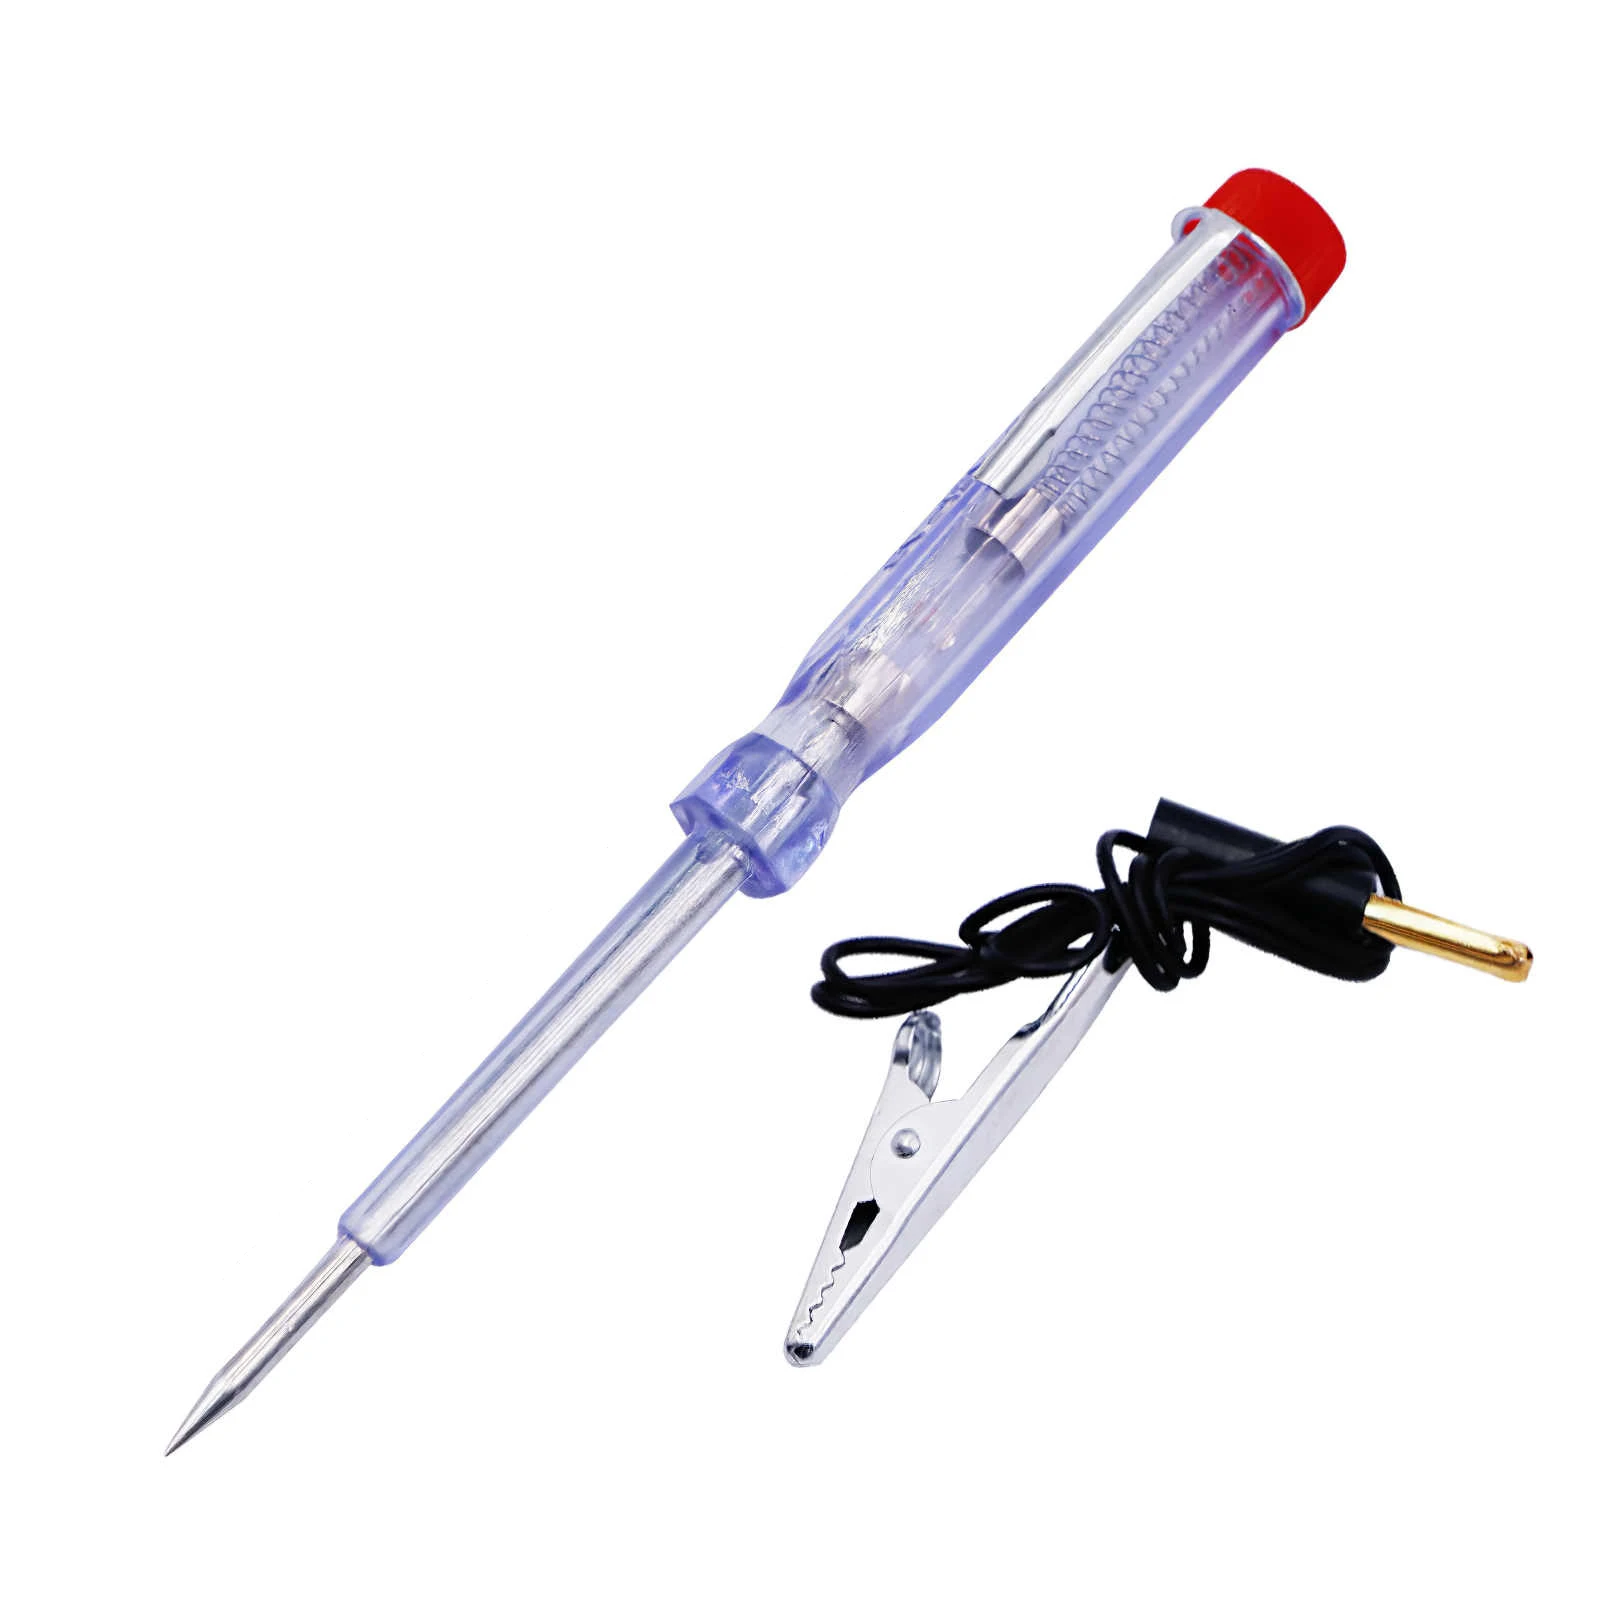 6V-24V Electrical Tester Pen Screwdriver With Voltage Test Power Detector Probe 